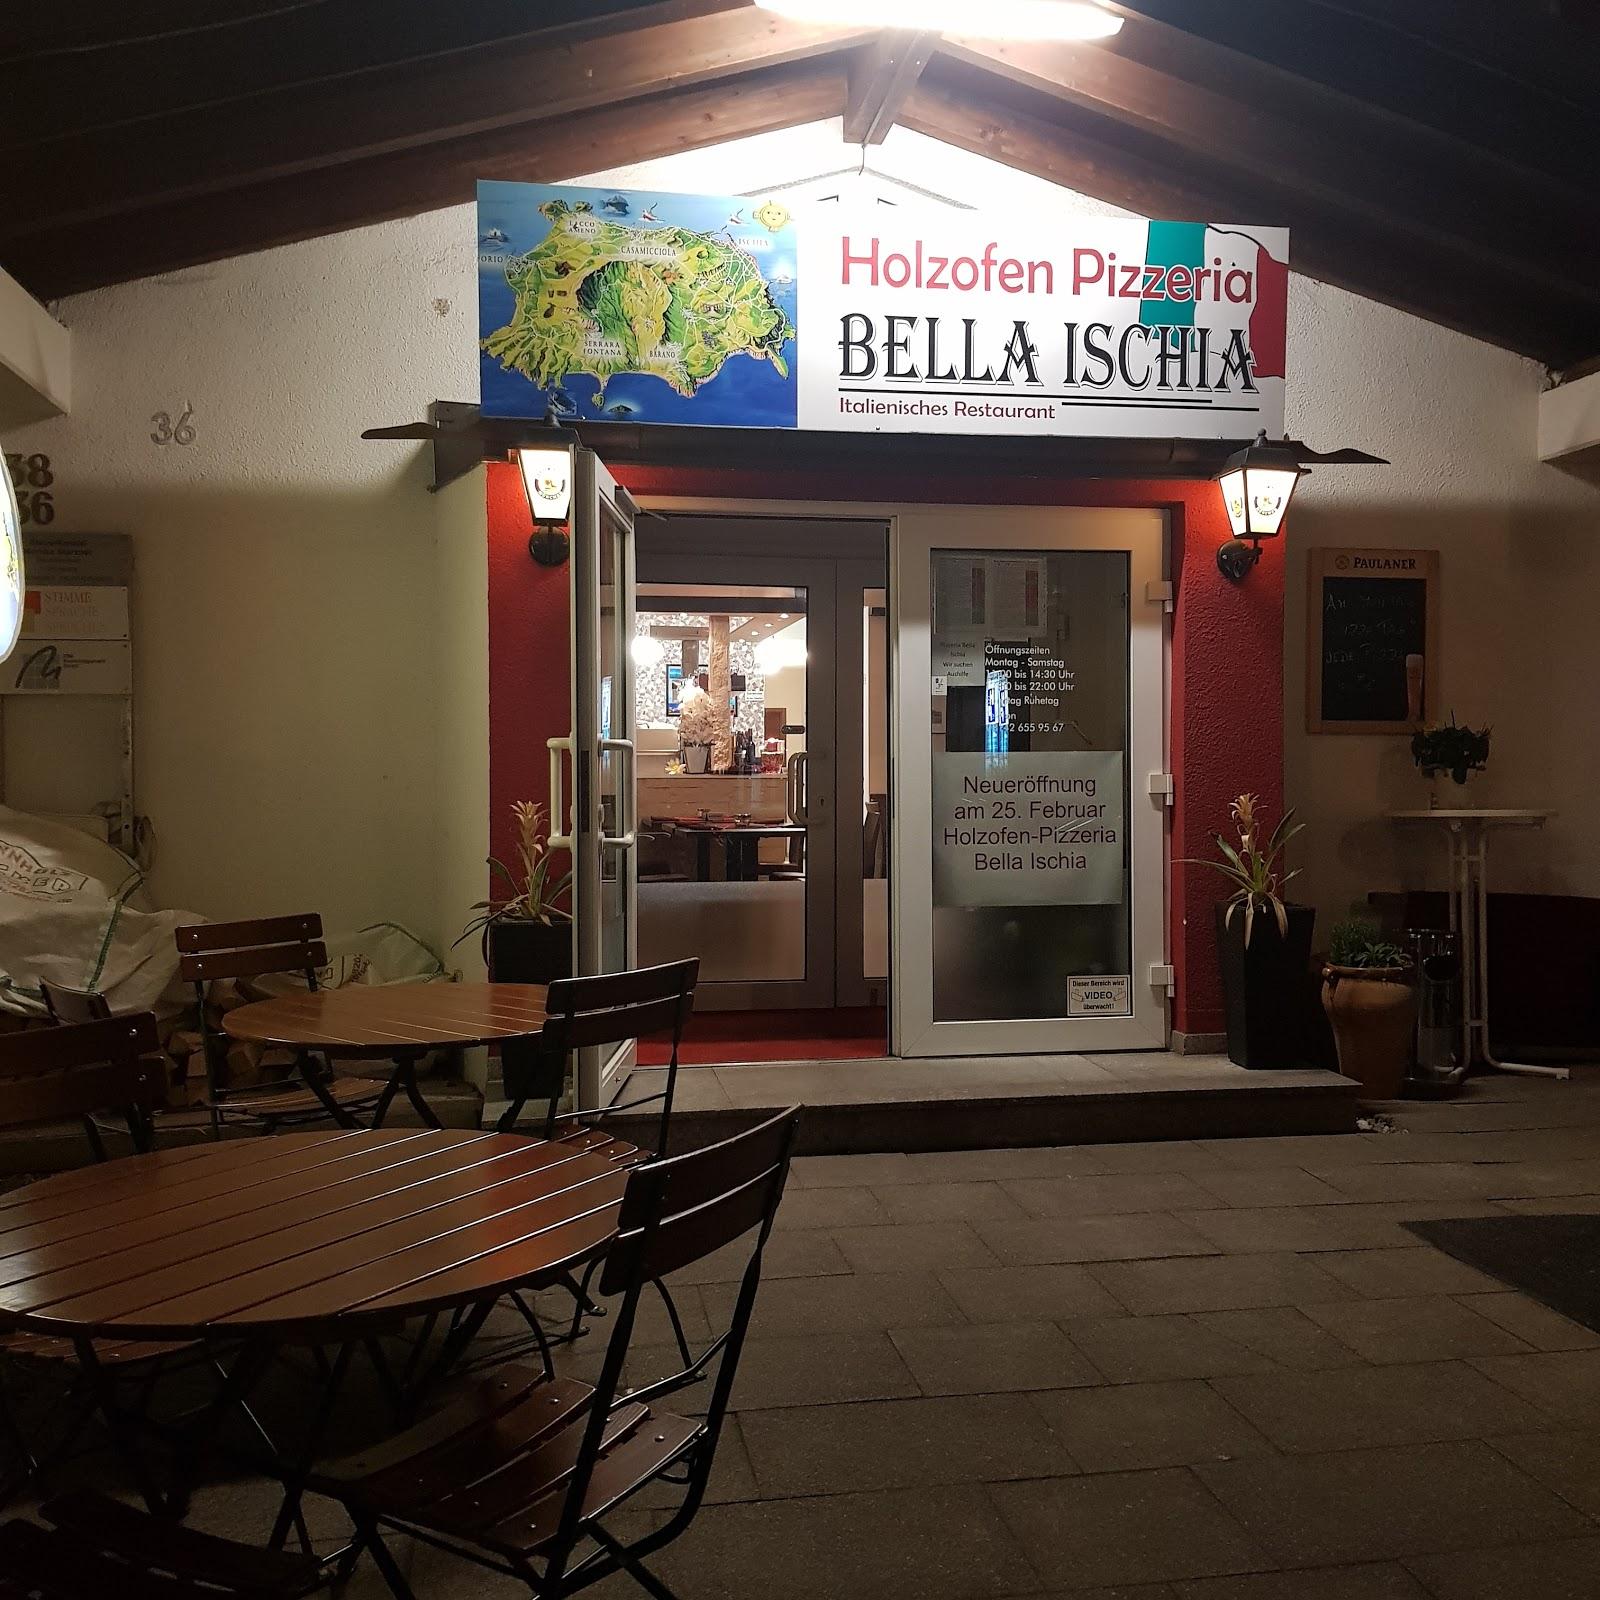 Restaurant "Holzofen Pizzeria Bella Ischia" in Gröbenzell